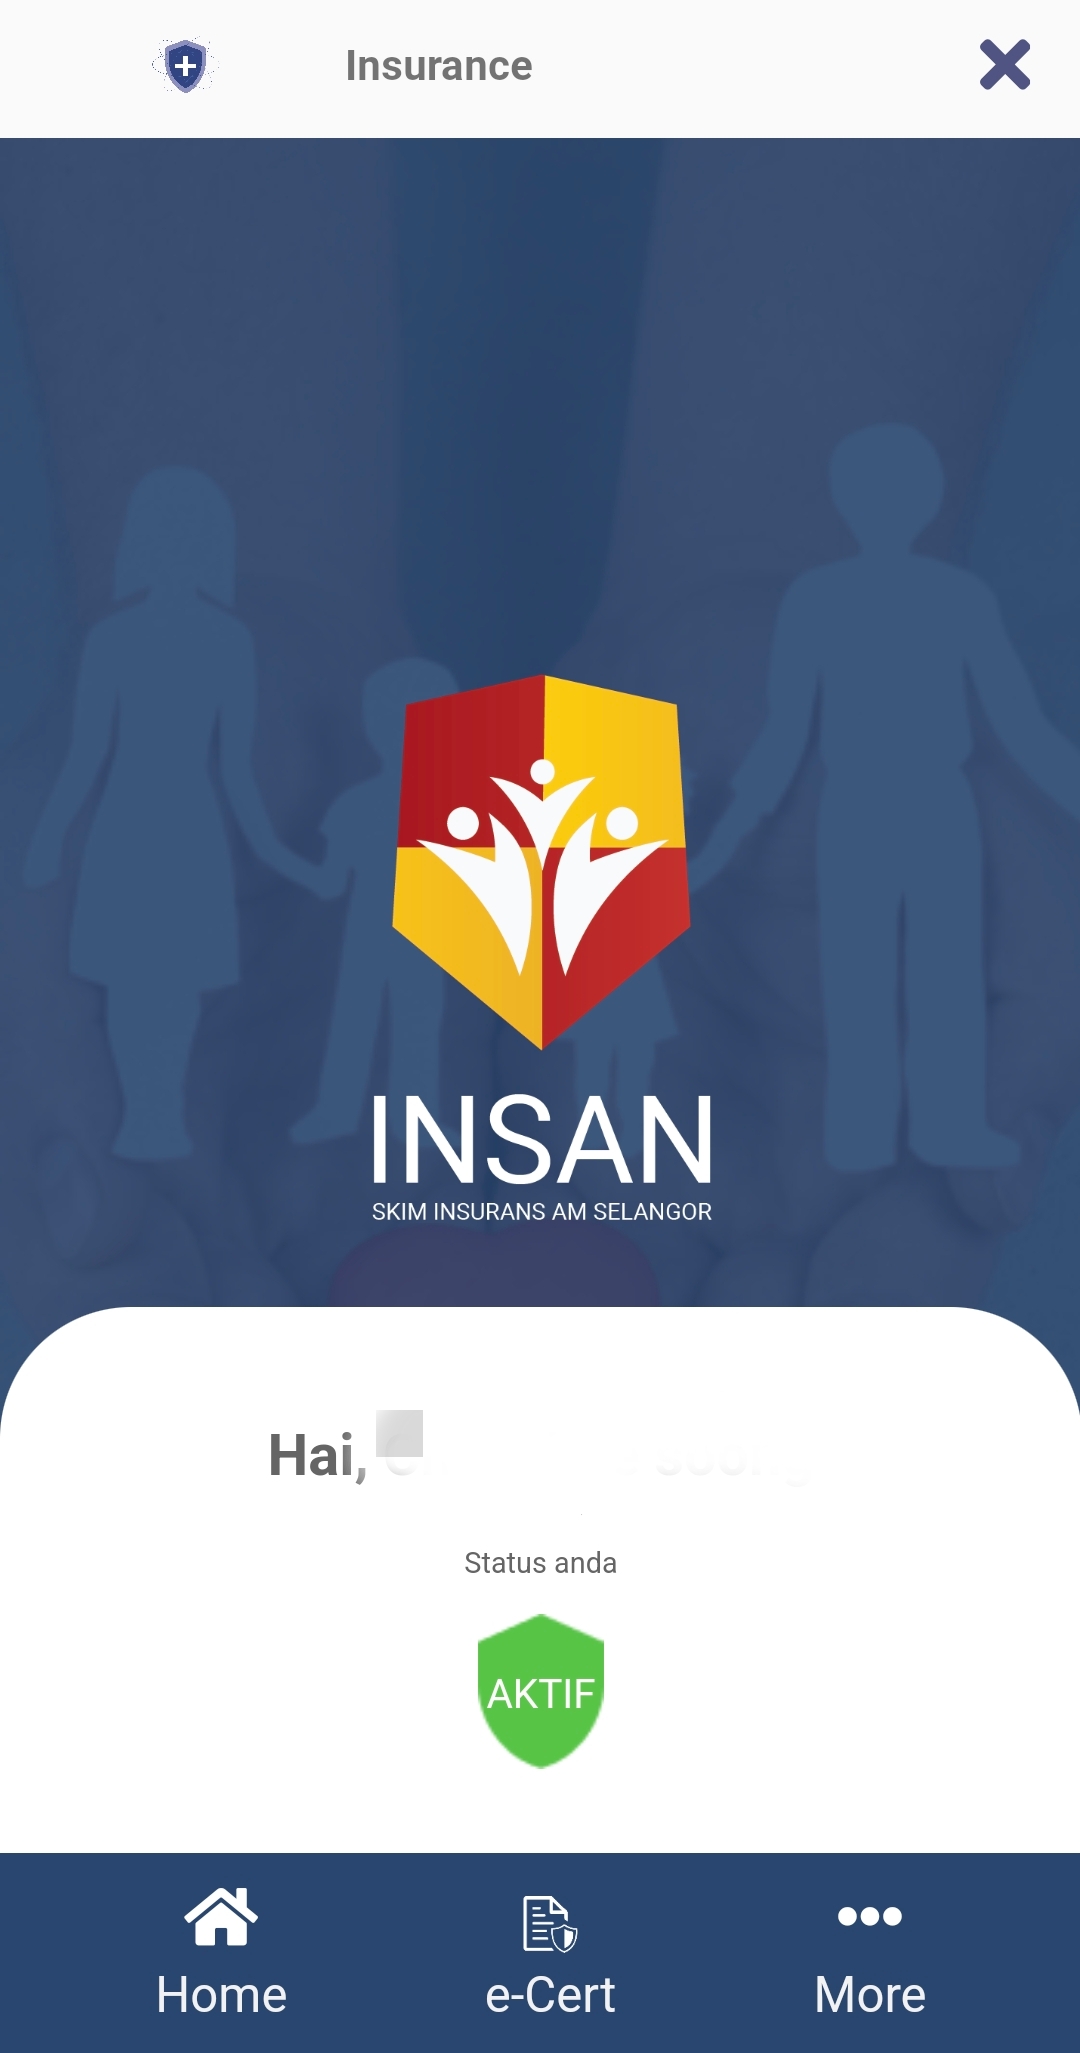 （大都会封面）“雪州全民保险计划”（INSAN）公开登记申请